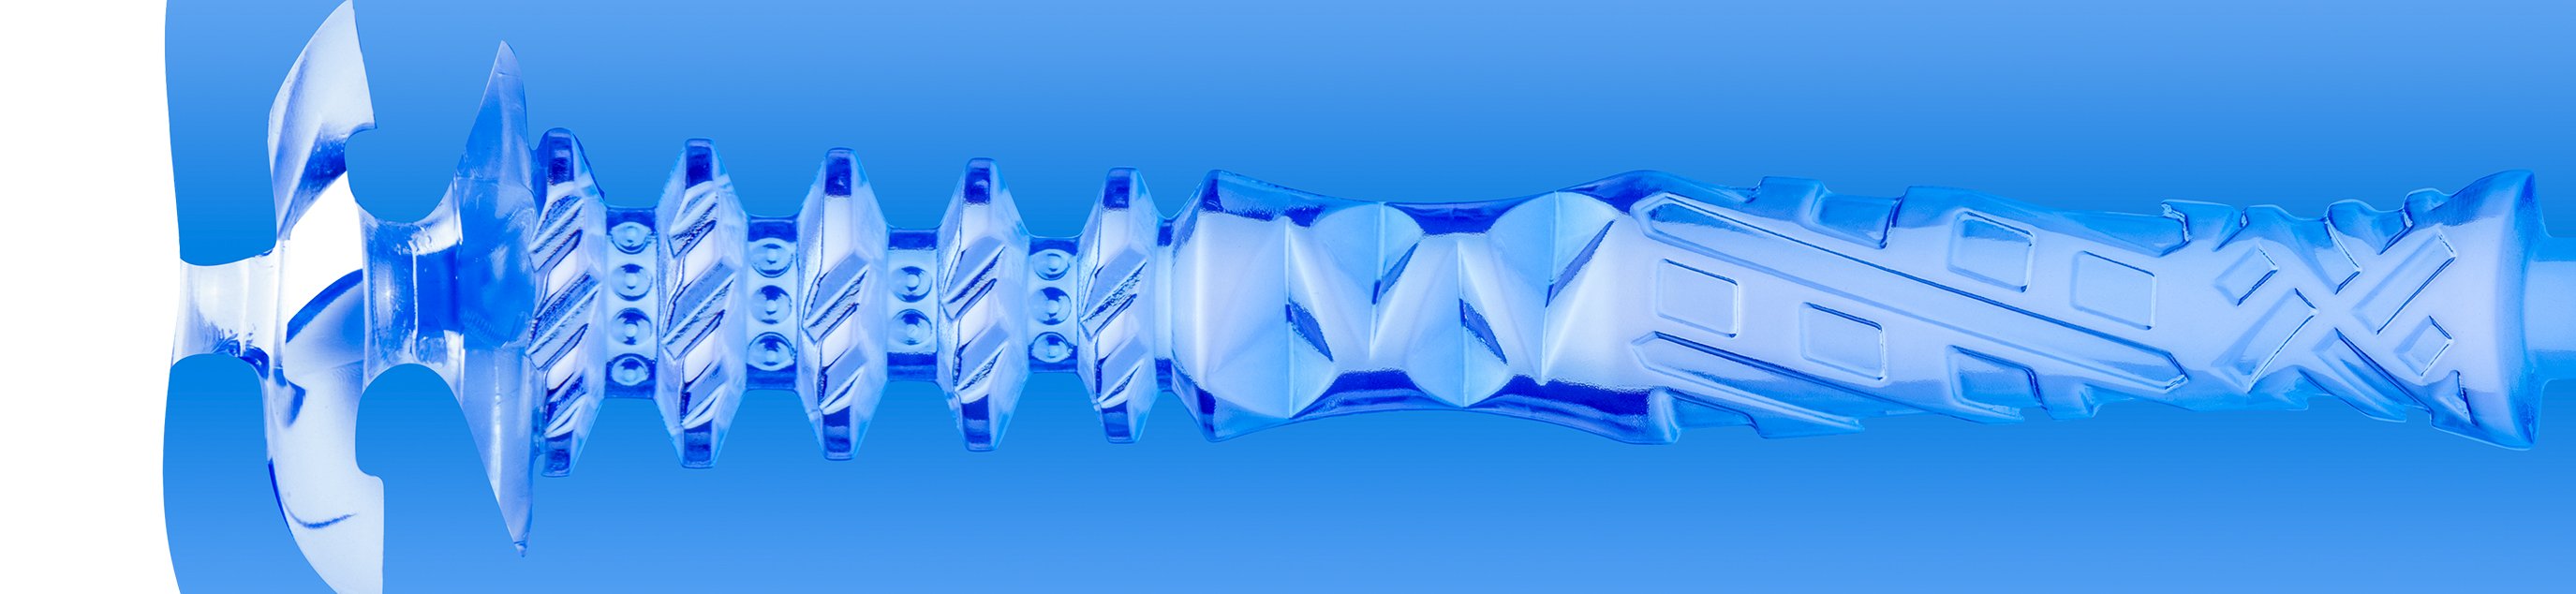 フレッシュライト：TURBOスラストブルーアイス / TURBO: Thrust Blue Ice の内部構造